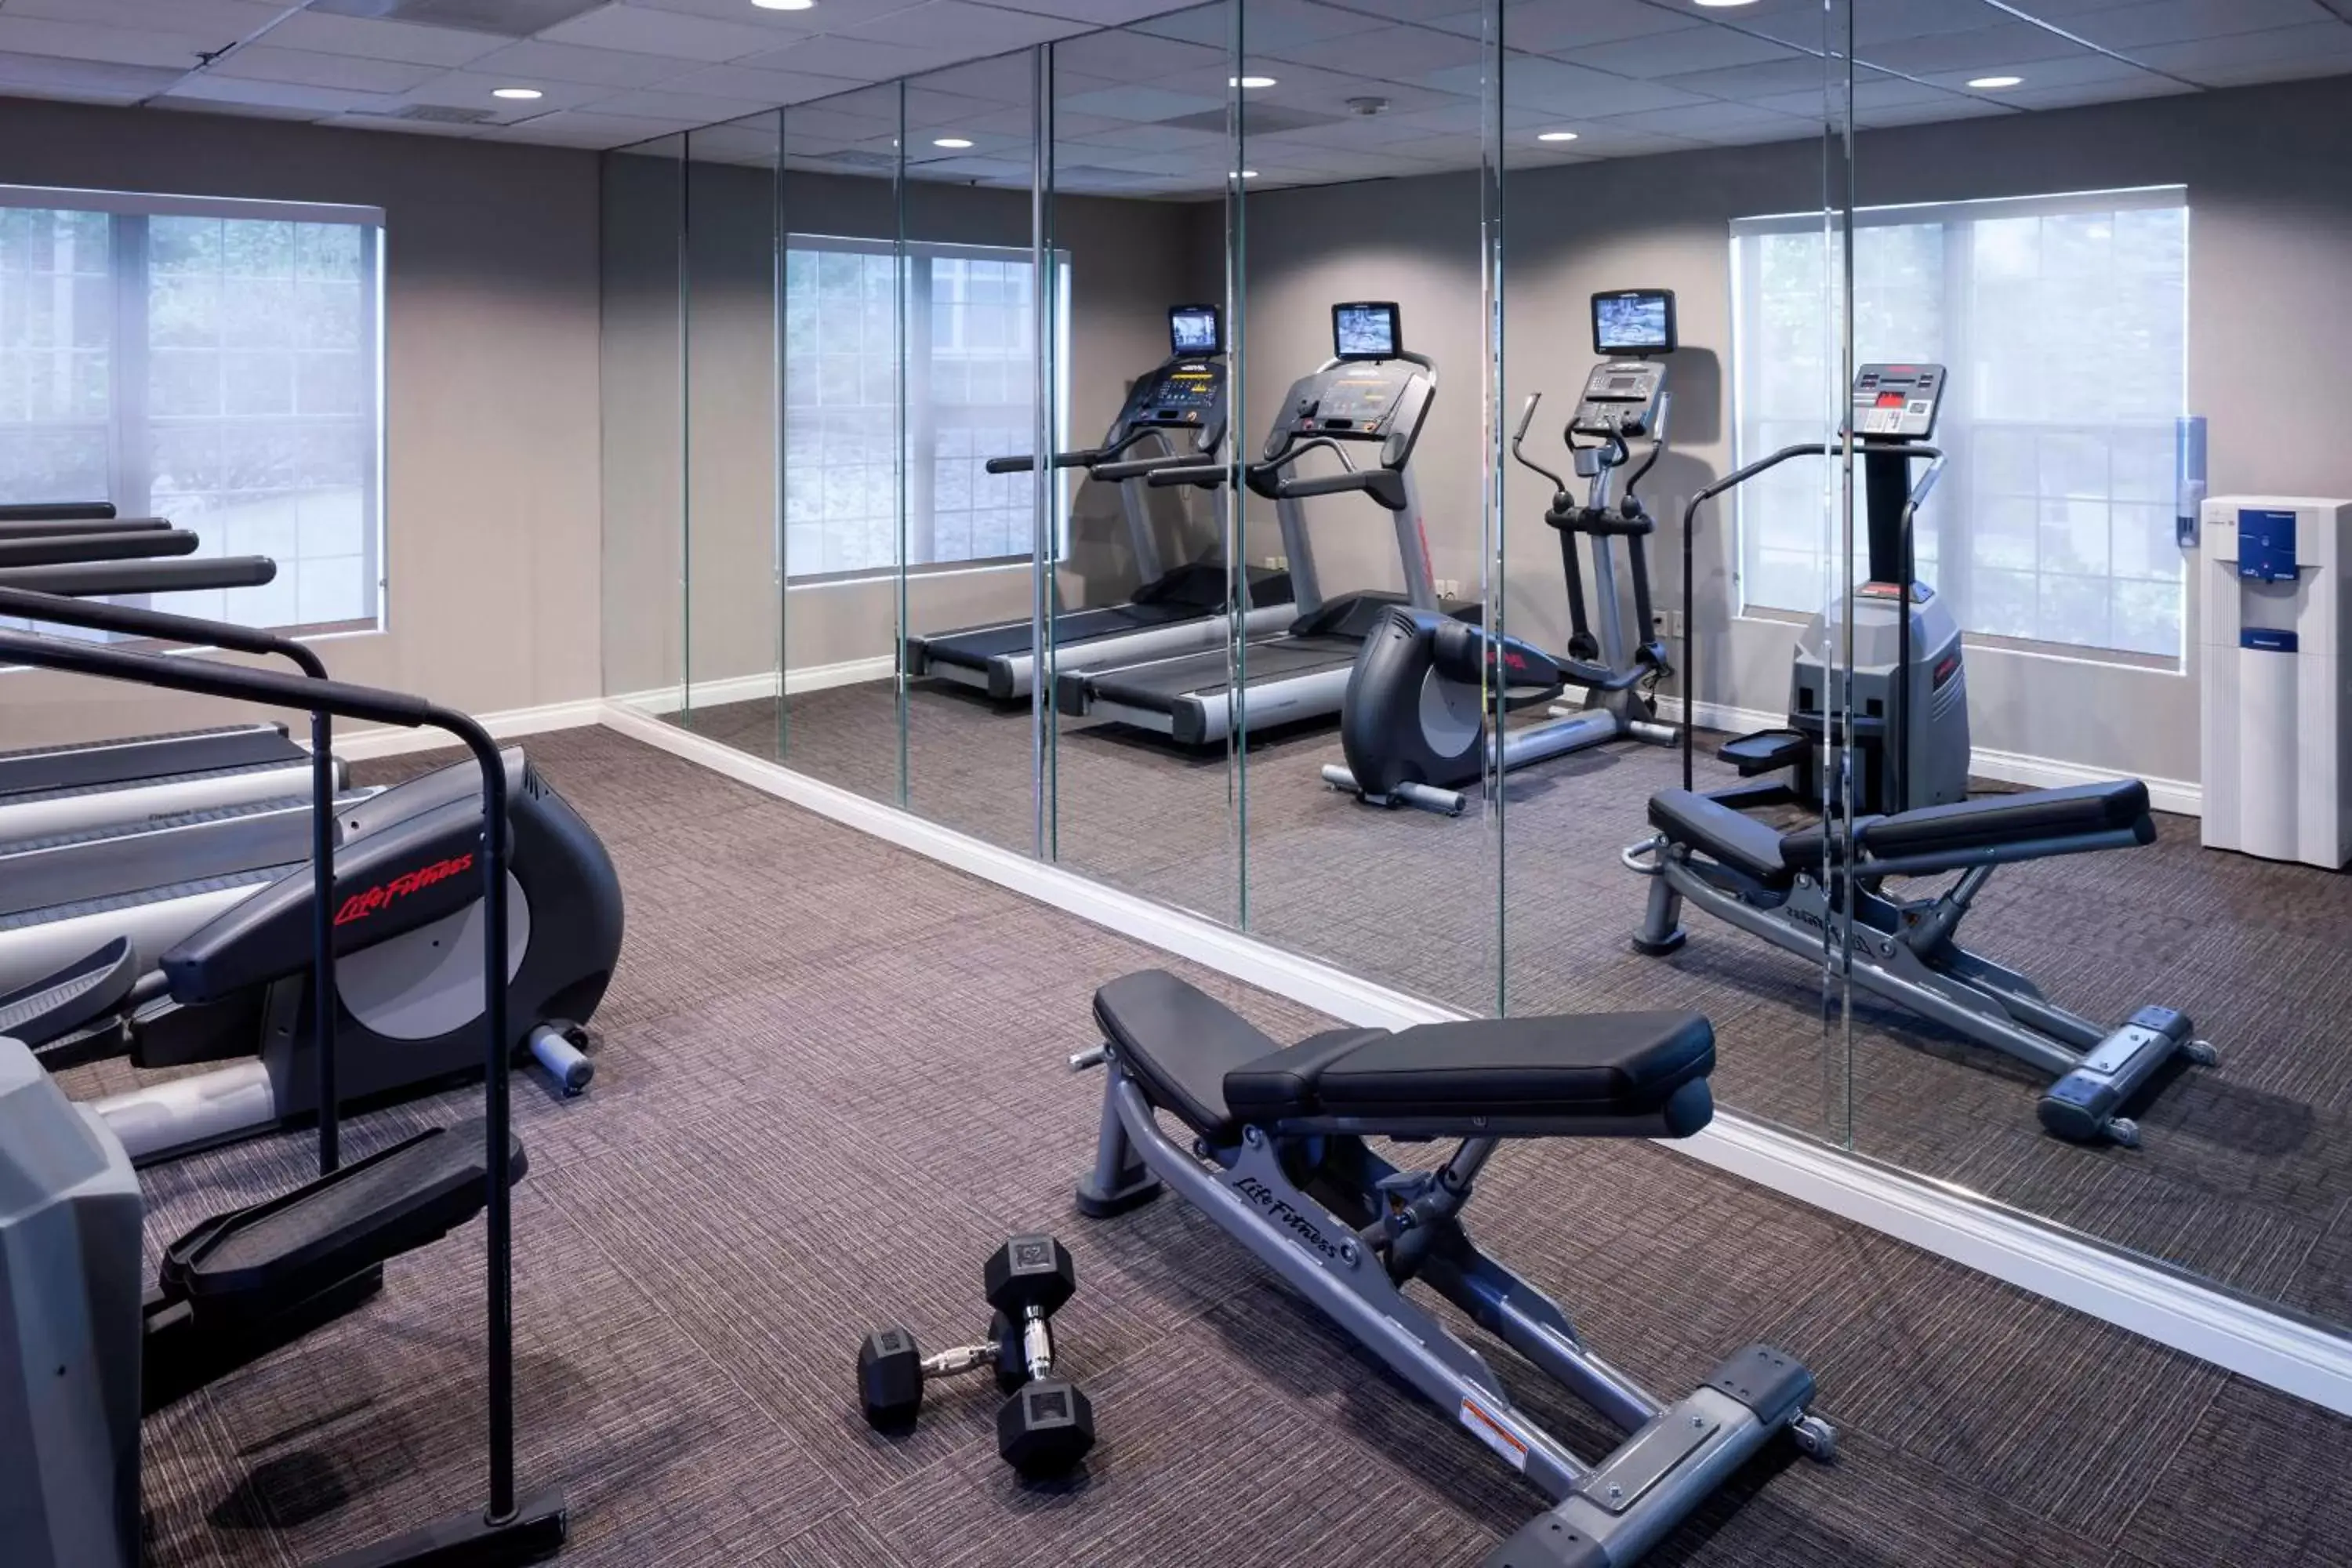 Fitness centre/facilities, Fitness Center/Facilities in Residence Inn Denver Highlands Ranch